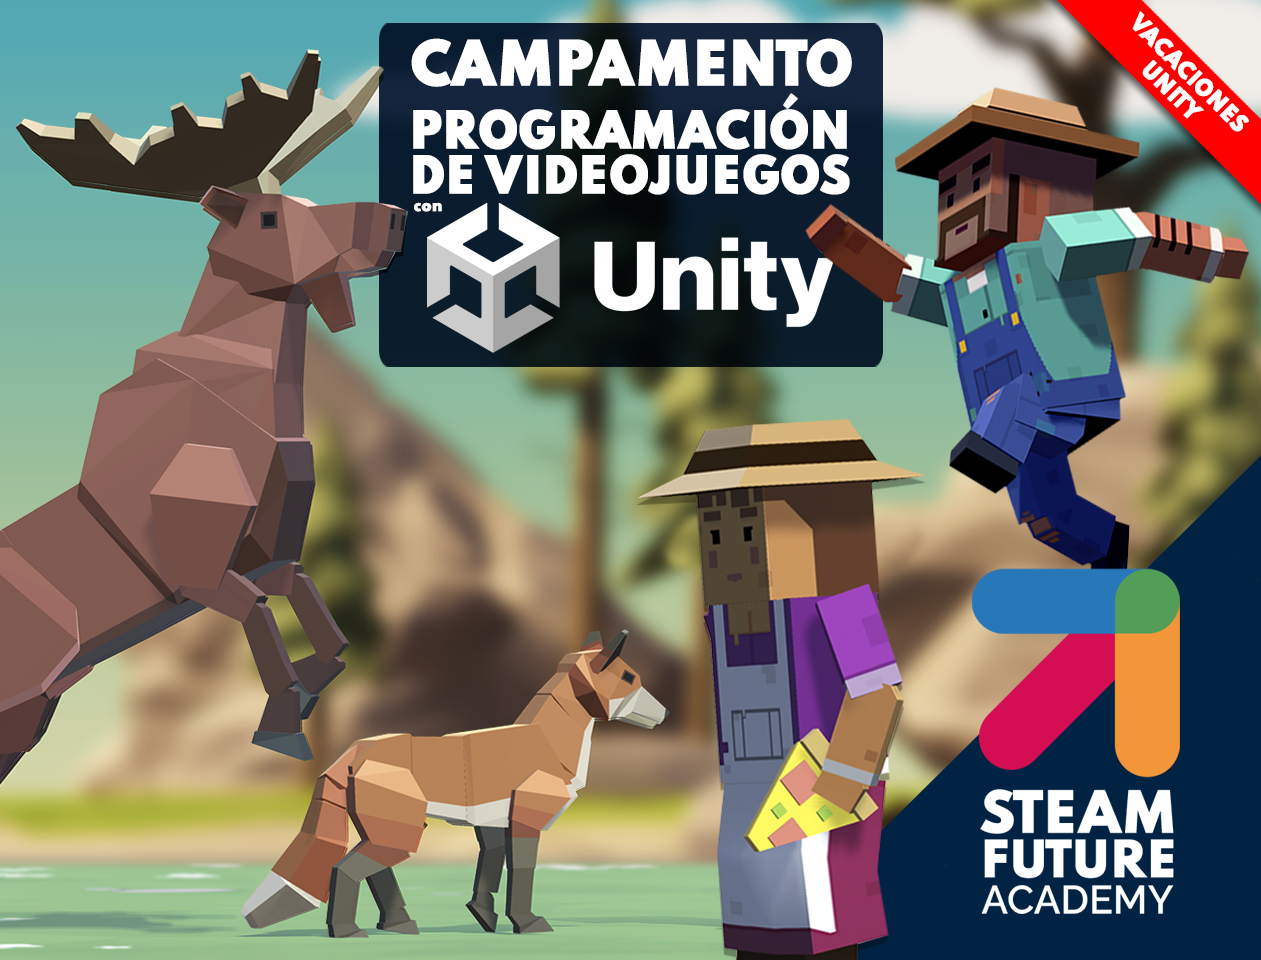 Campamento Programación de Videojuegos con Unity